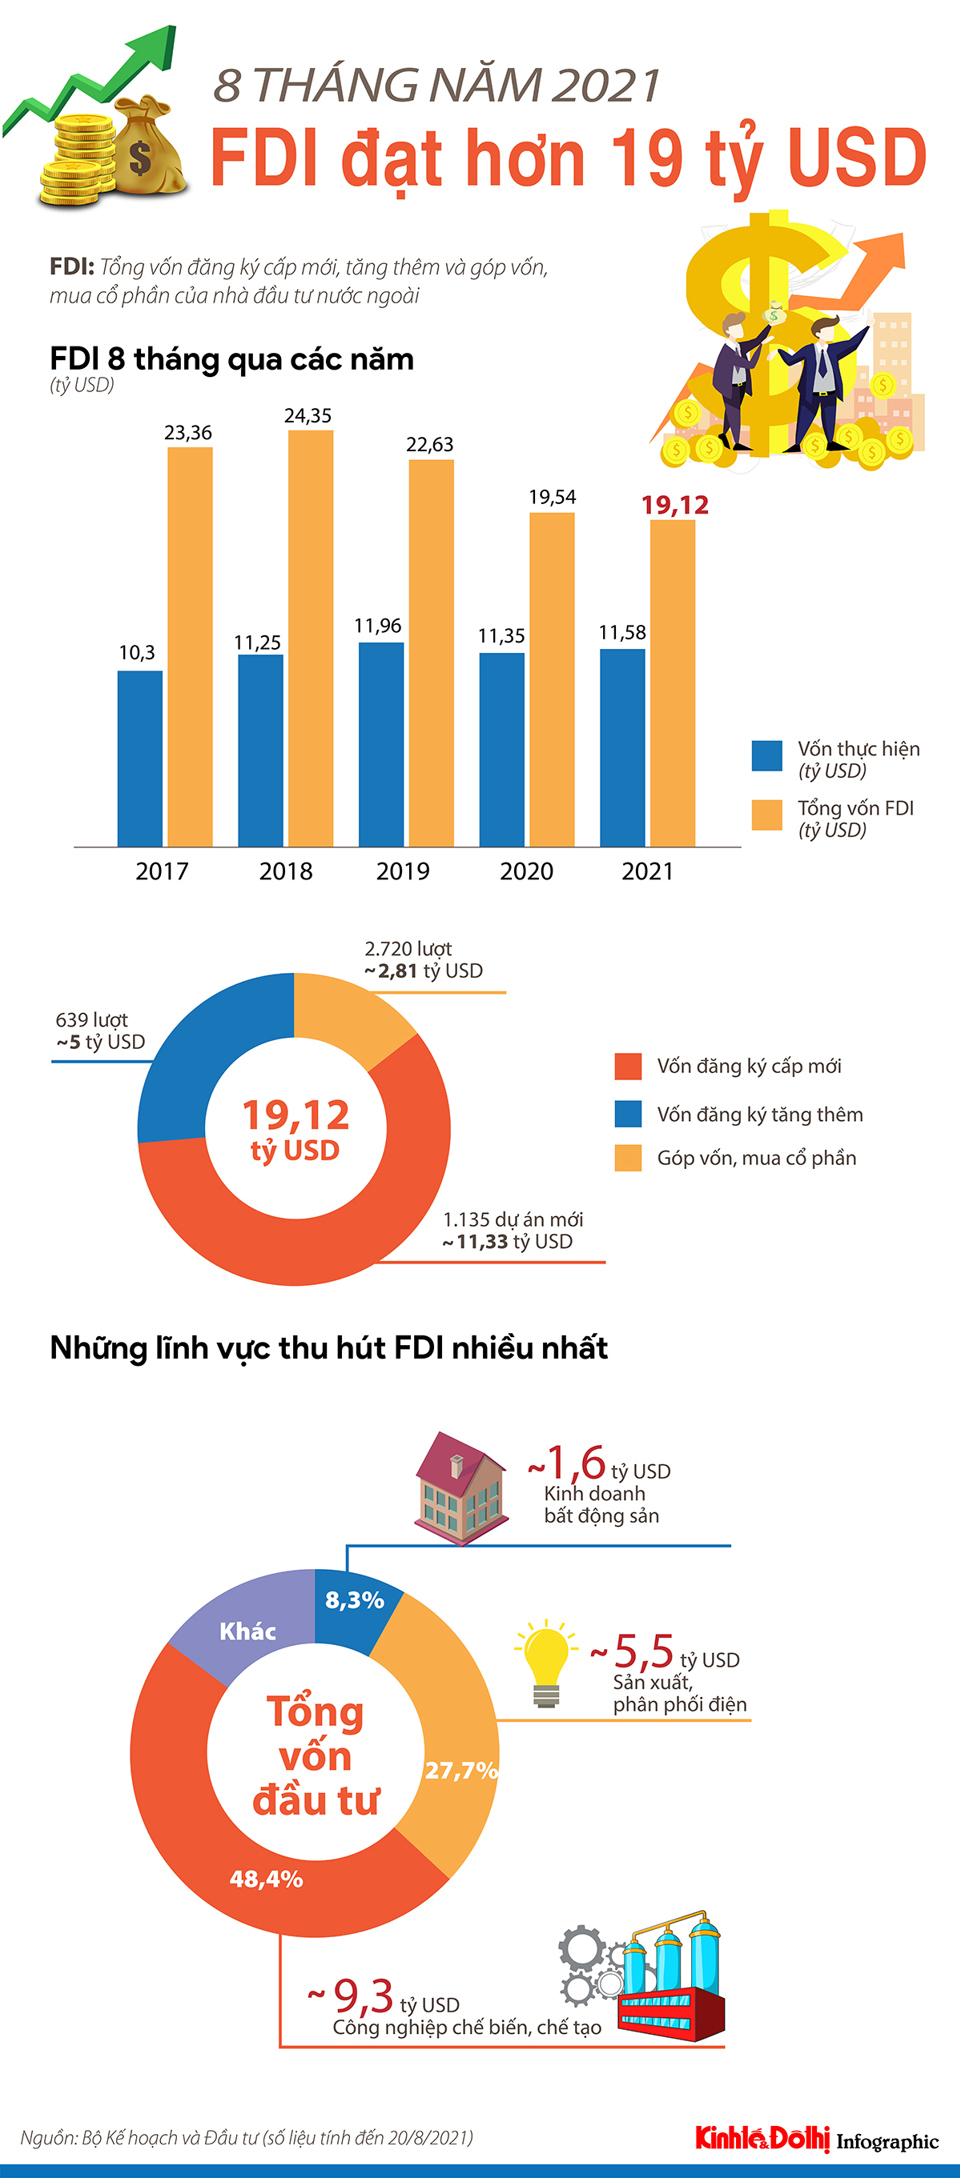 [Infographic] 8 tháng năm 2021, Việt Nam thu hút hơn 19 tỷ USD vốn FDI - Ảnh 1